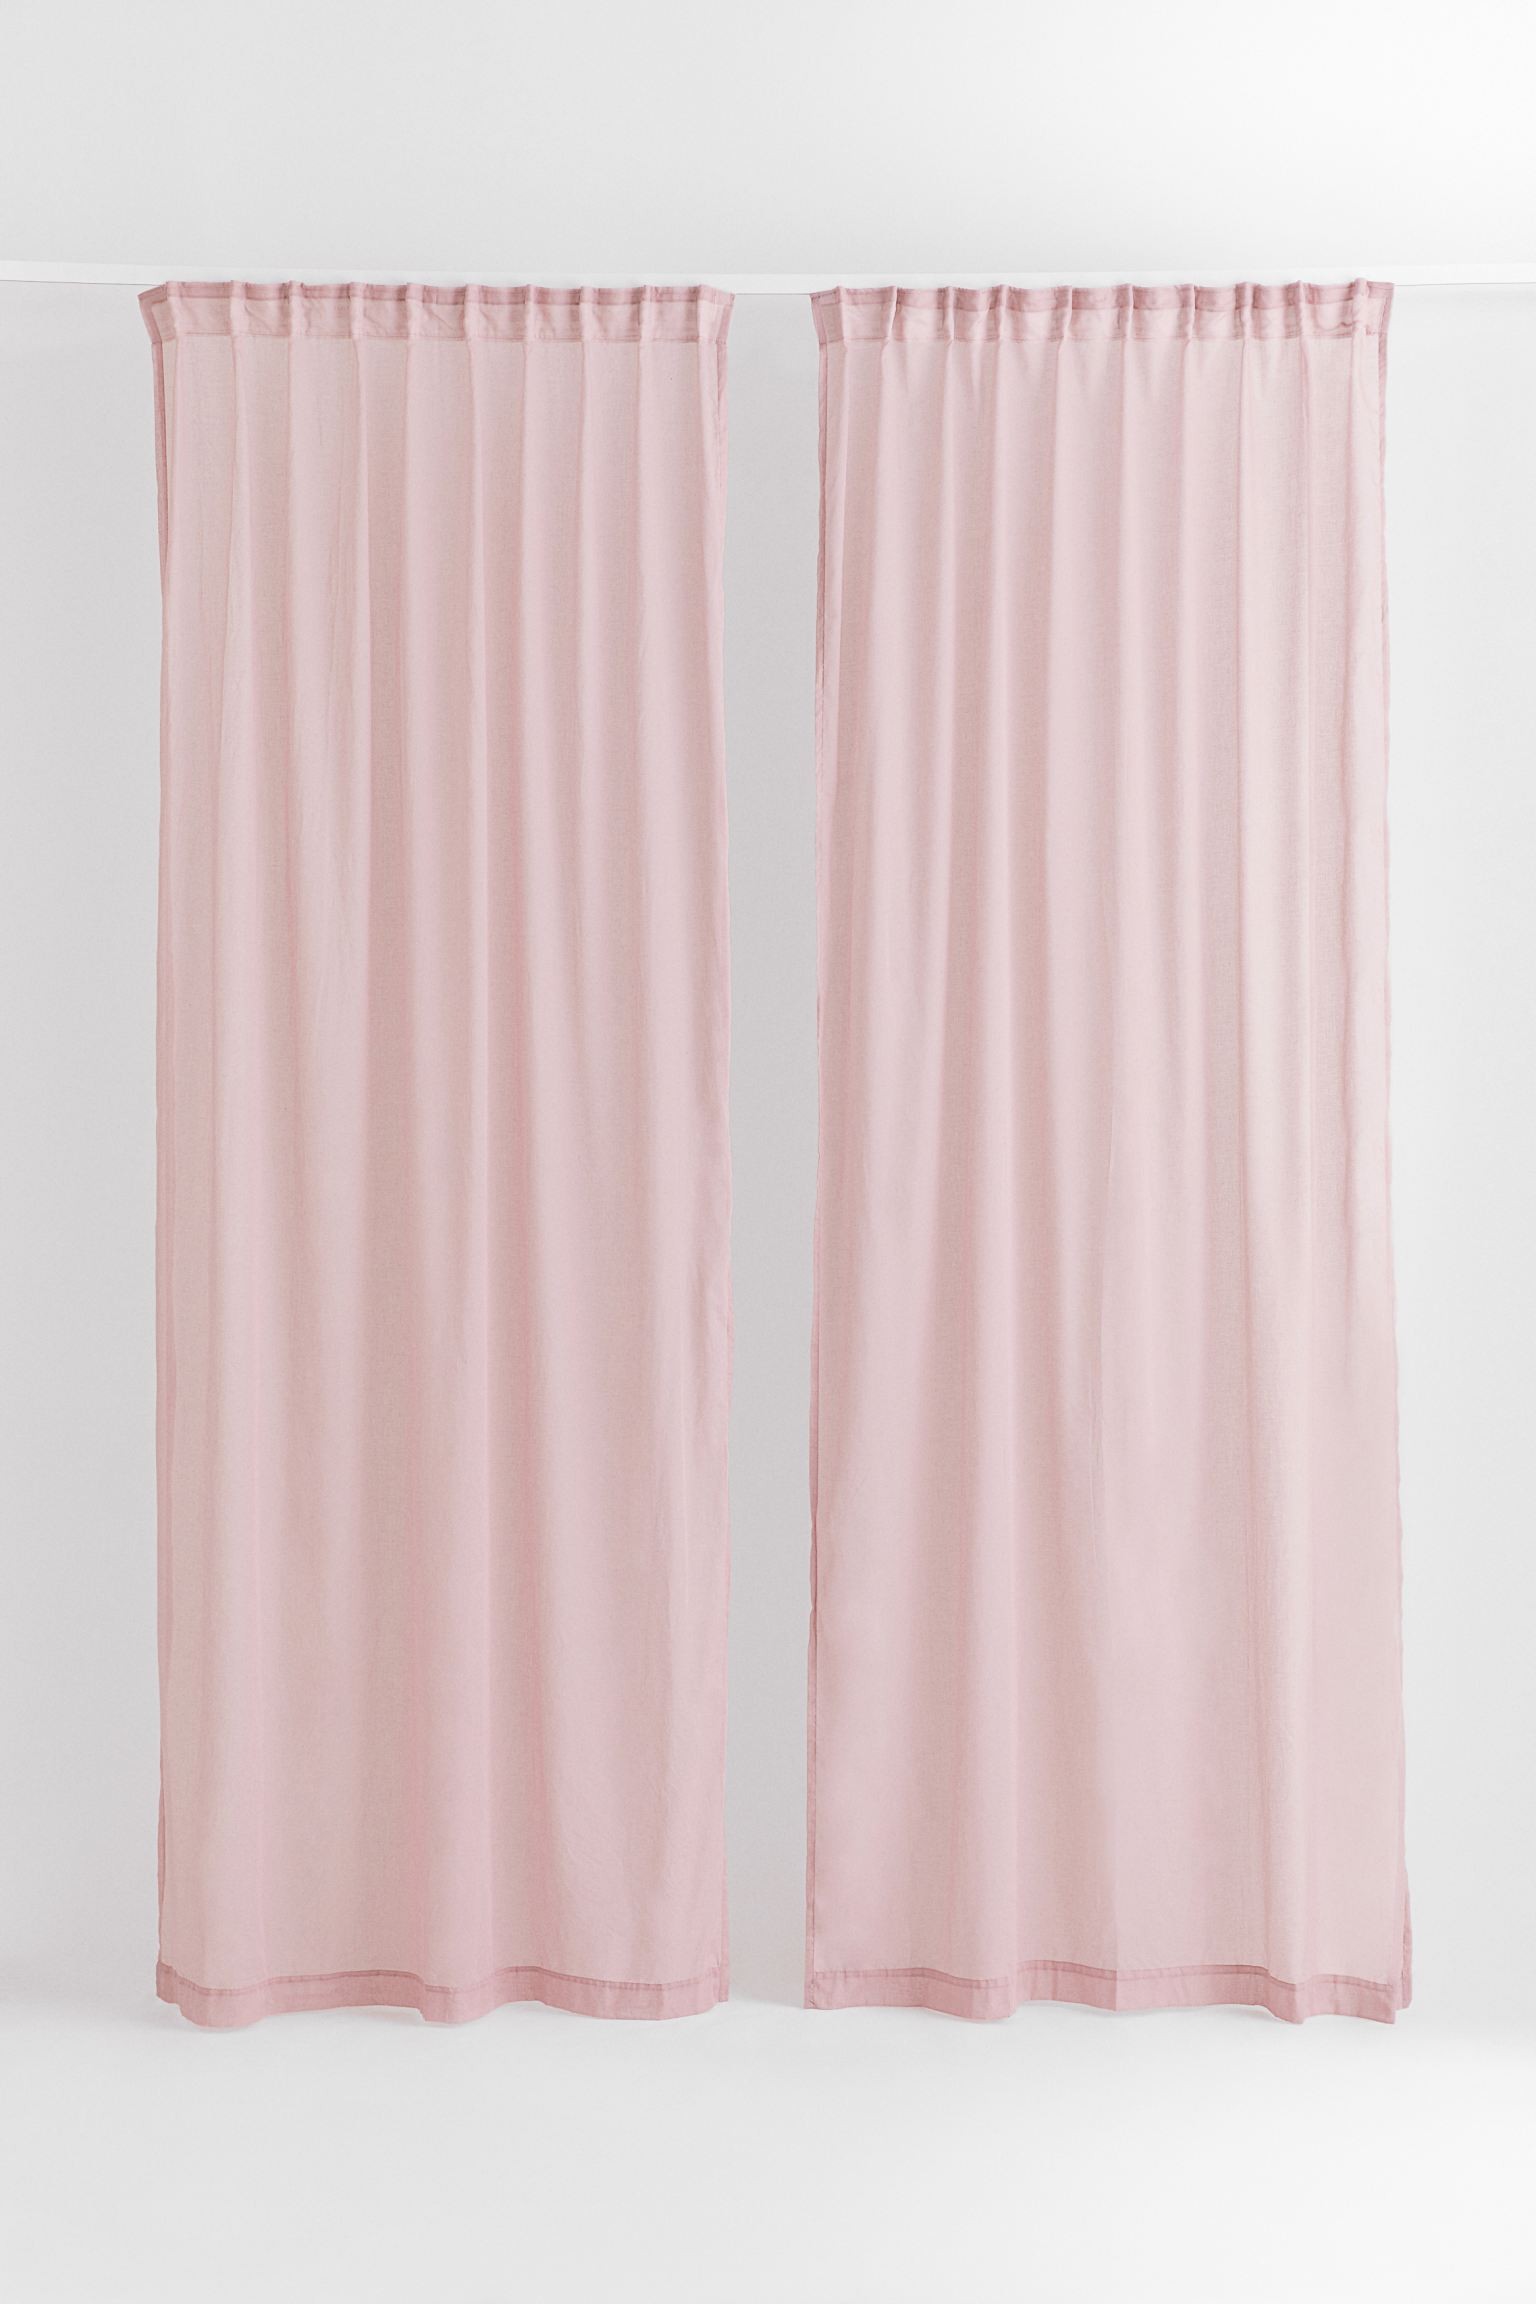 H&M Home Легка багатофункціональна штора, 2 шт., Пудрово-рожевий, 150x300 1038743003 1038743003